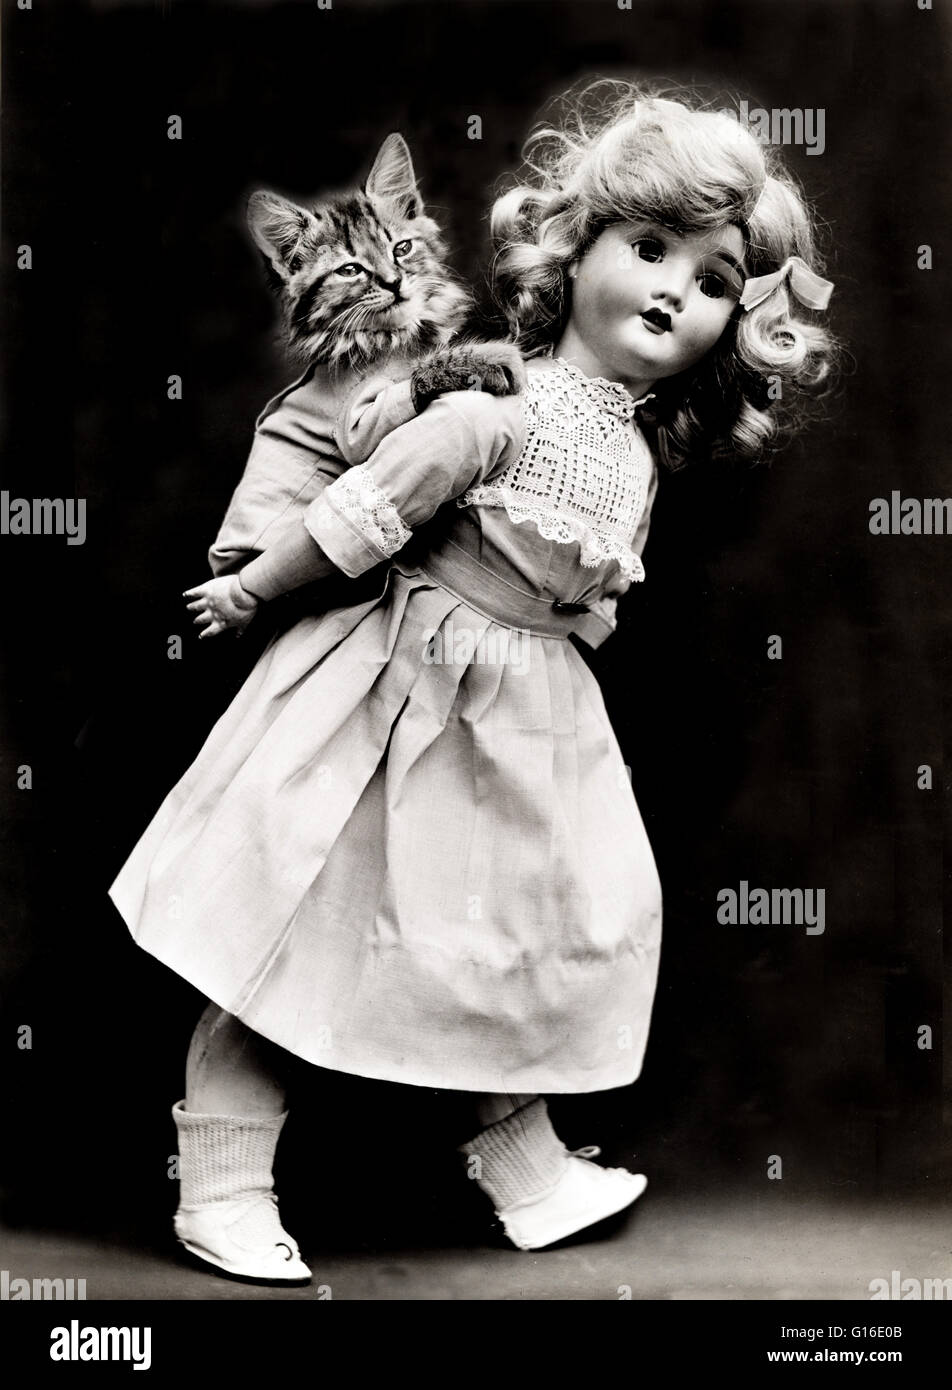 Titel: "Pick-a-Pack" zeigt eine Puppe geben einer Kätzchen eine Huckepack Fahrt. Harry Whittier befreit (1879-1953) war ein US-amerikanischer Fotograf, der lebende Tiere gekleidet und posierte in menschlichen Situationen mit Requisiten fotografiert. Seine Tierfotos wurden auf Post vorgestellt. Stockfoto